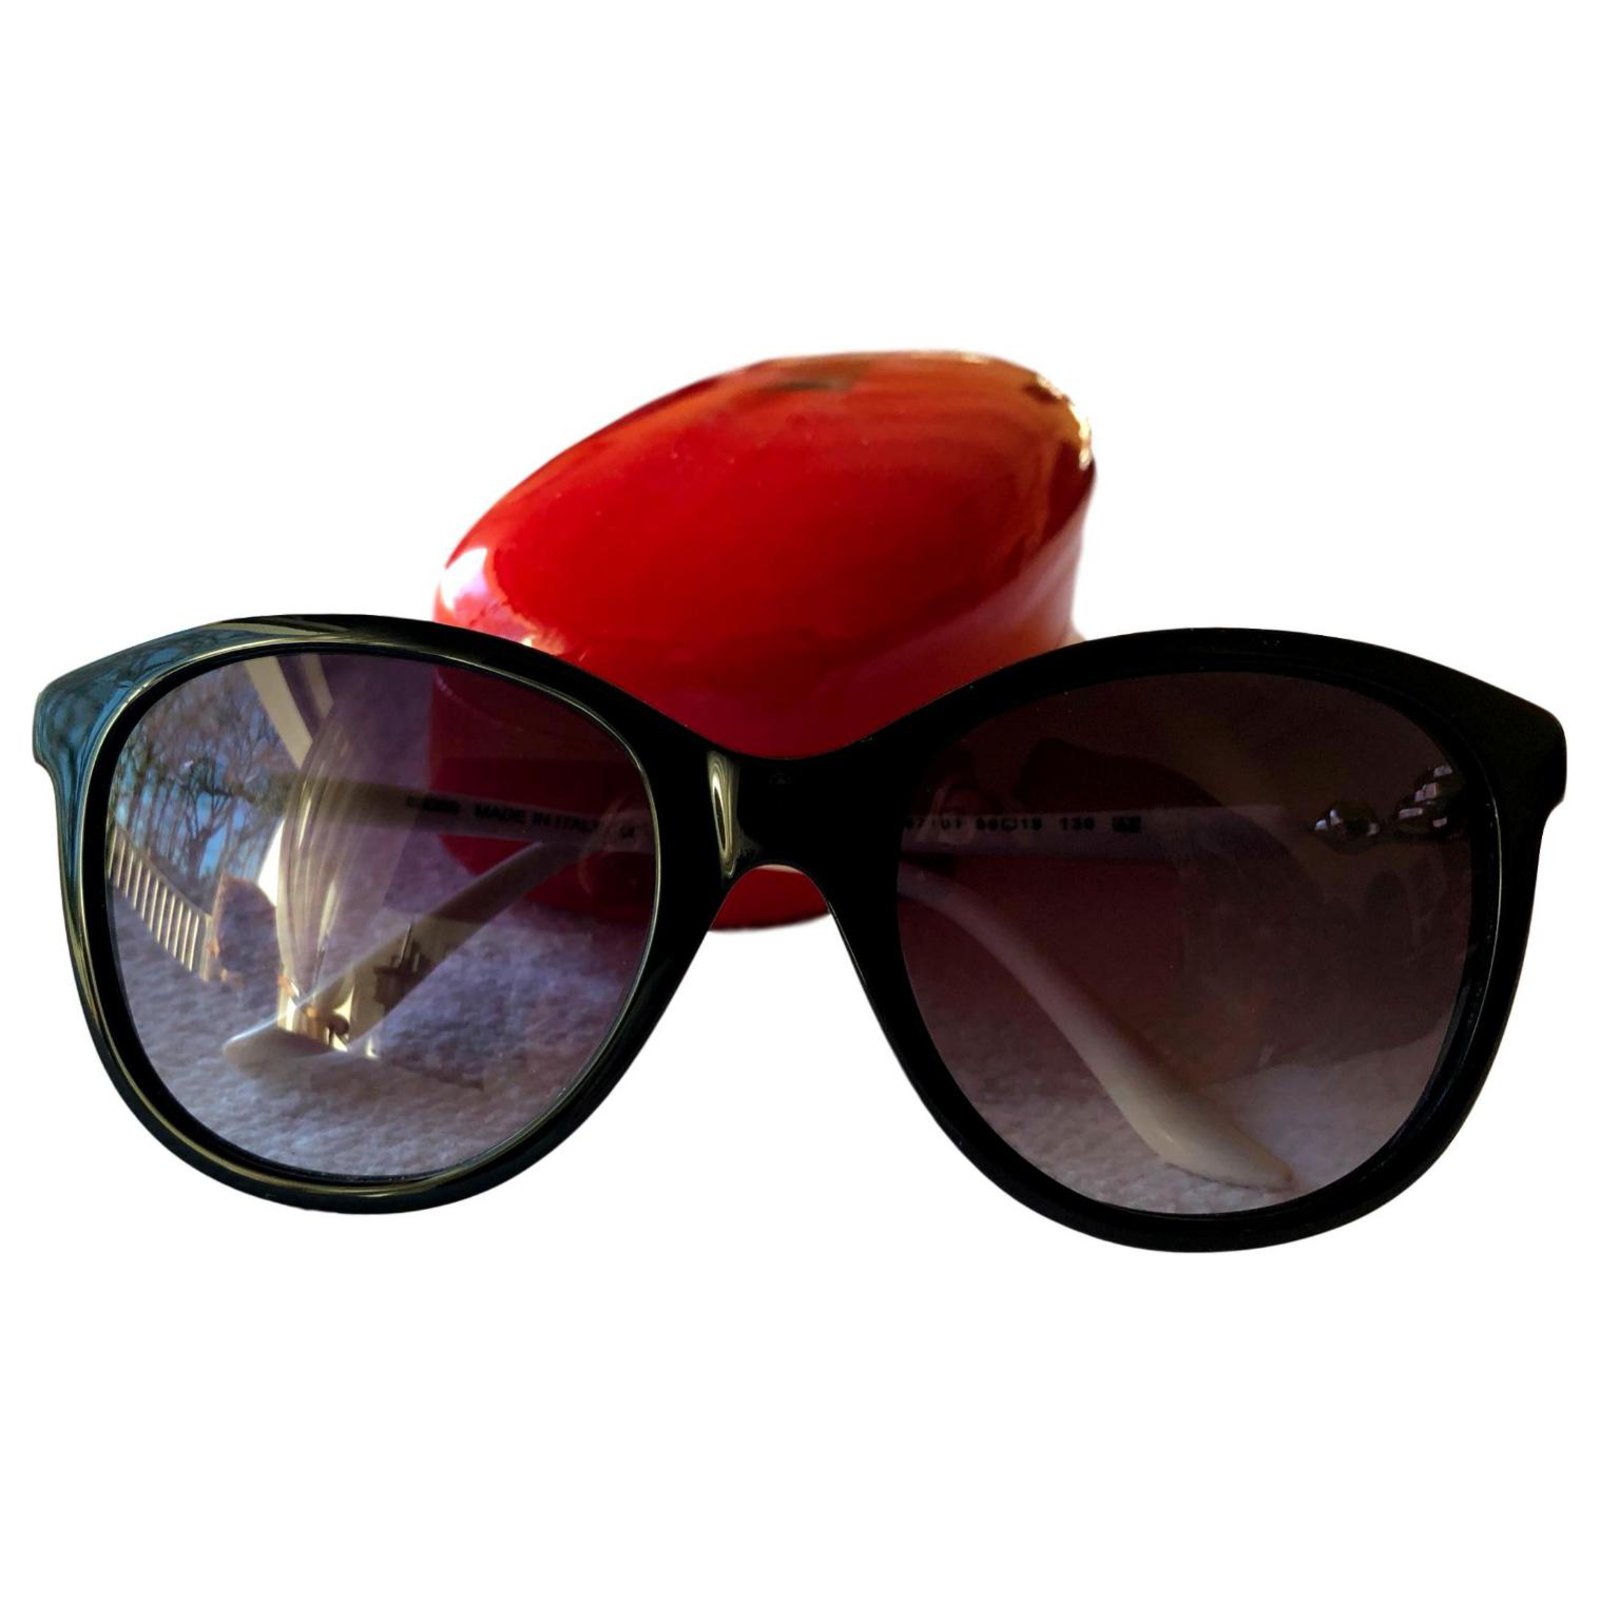 moschino sunglasses 2019